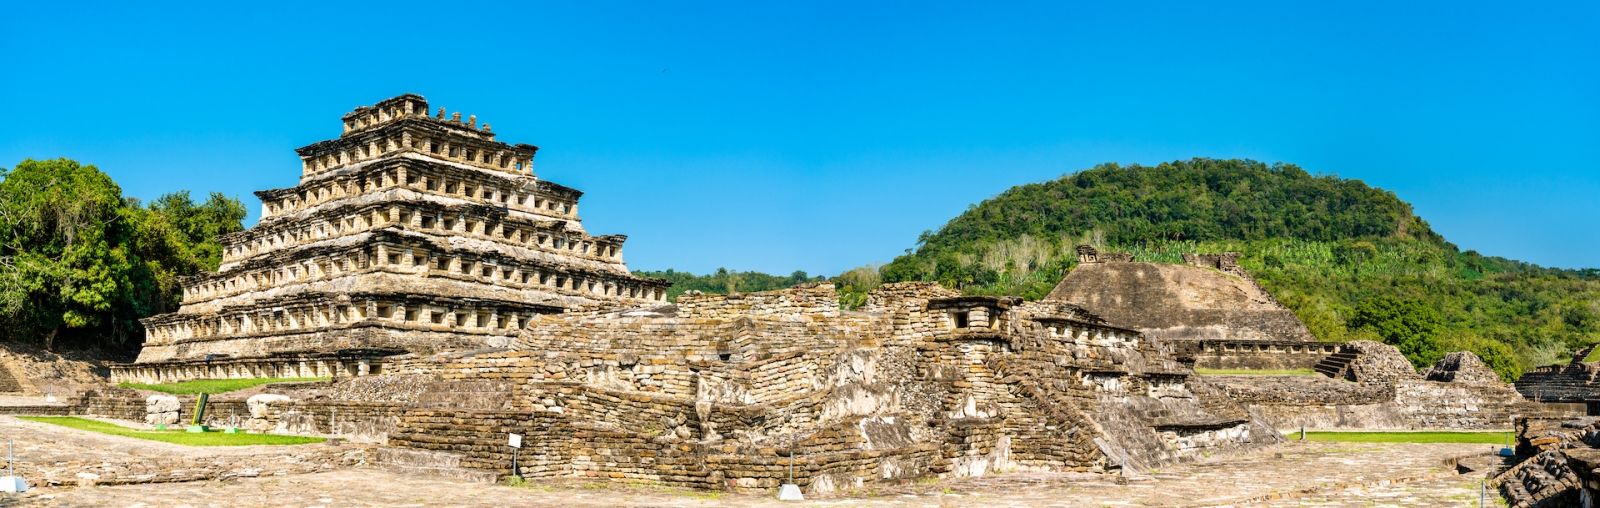 El Tajin, un sito archeologico precolombiano nel sud del Messico